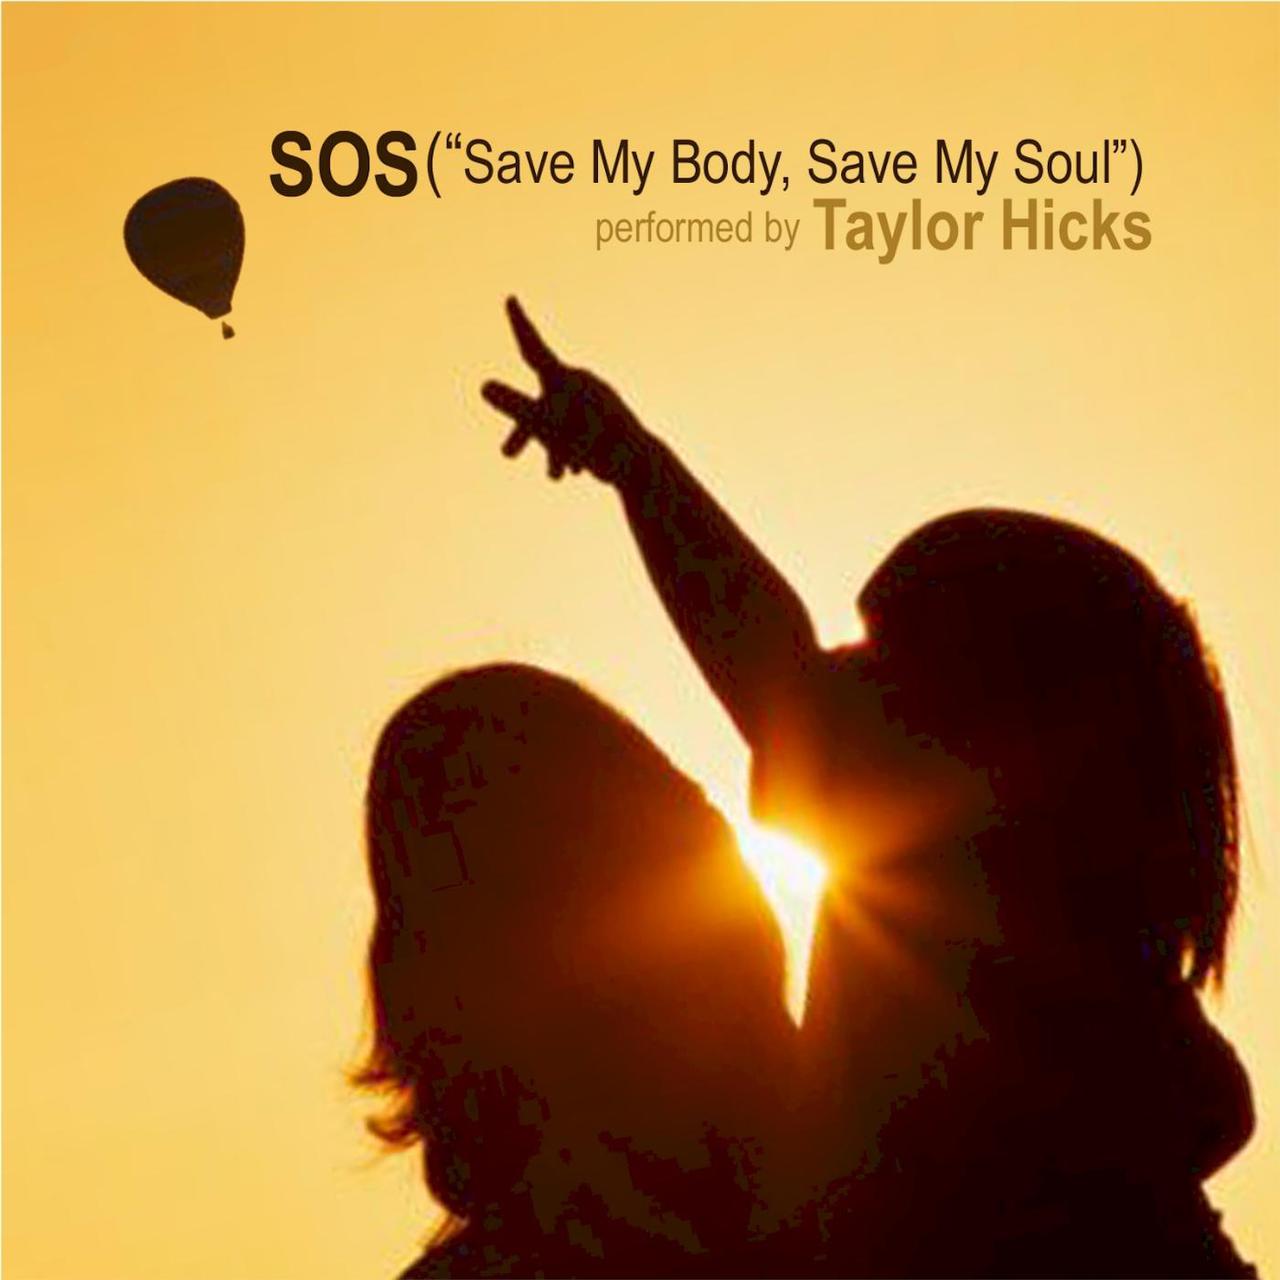 Taylor Hicks “S.O.S. (‘Save My Body, Save My Soul’)”